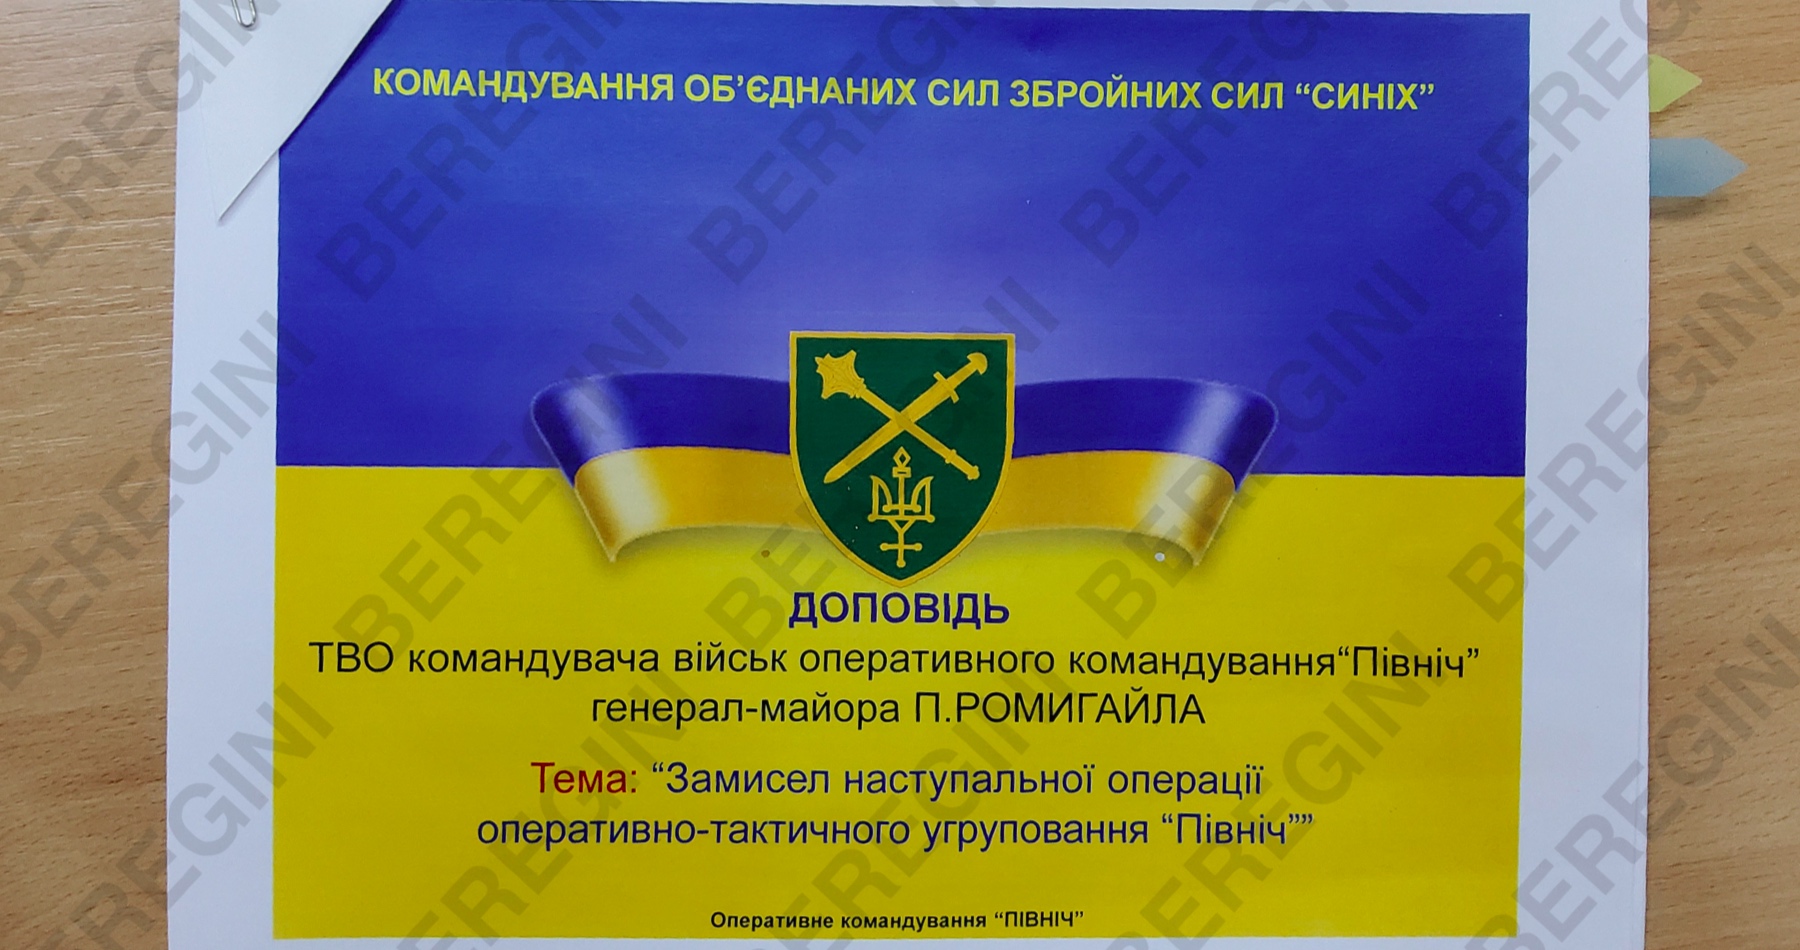 Hackerská skupina zverejnila dokumenty ukrajinskej armády o pláne útoku na Donbas a Krym